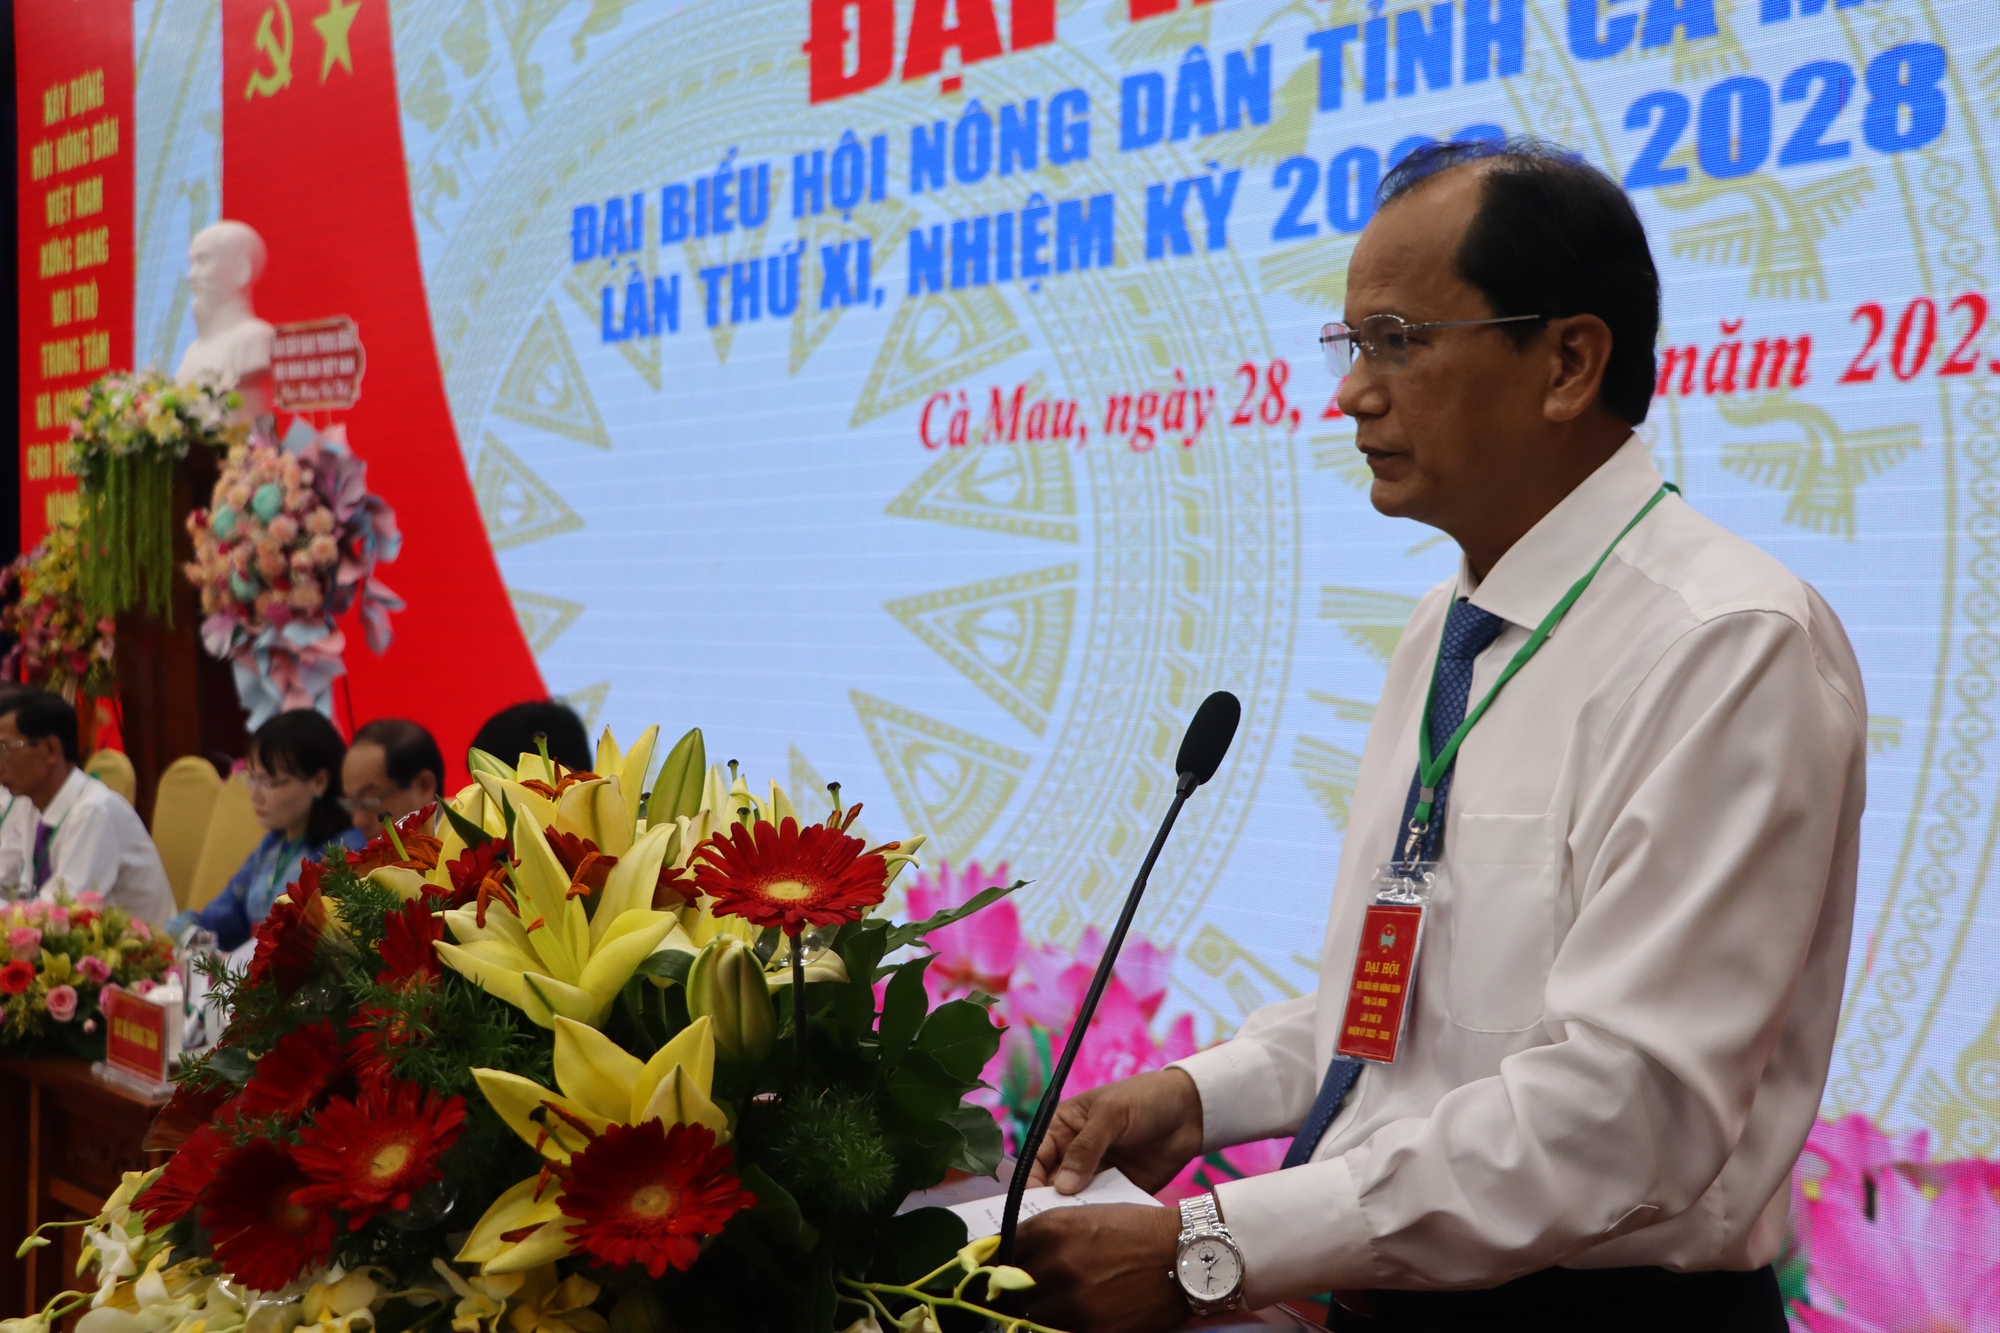 Bí thư Tỉnh ủy Cà Mau và Phó Chủ tịch BCH TƯ Hội NDVN dự, chỉ đạo Đại hội đại biểu Hội Nông dân tỉnh - Ảnh 4.